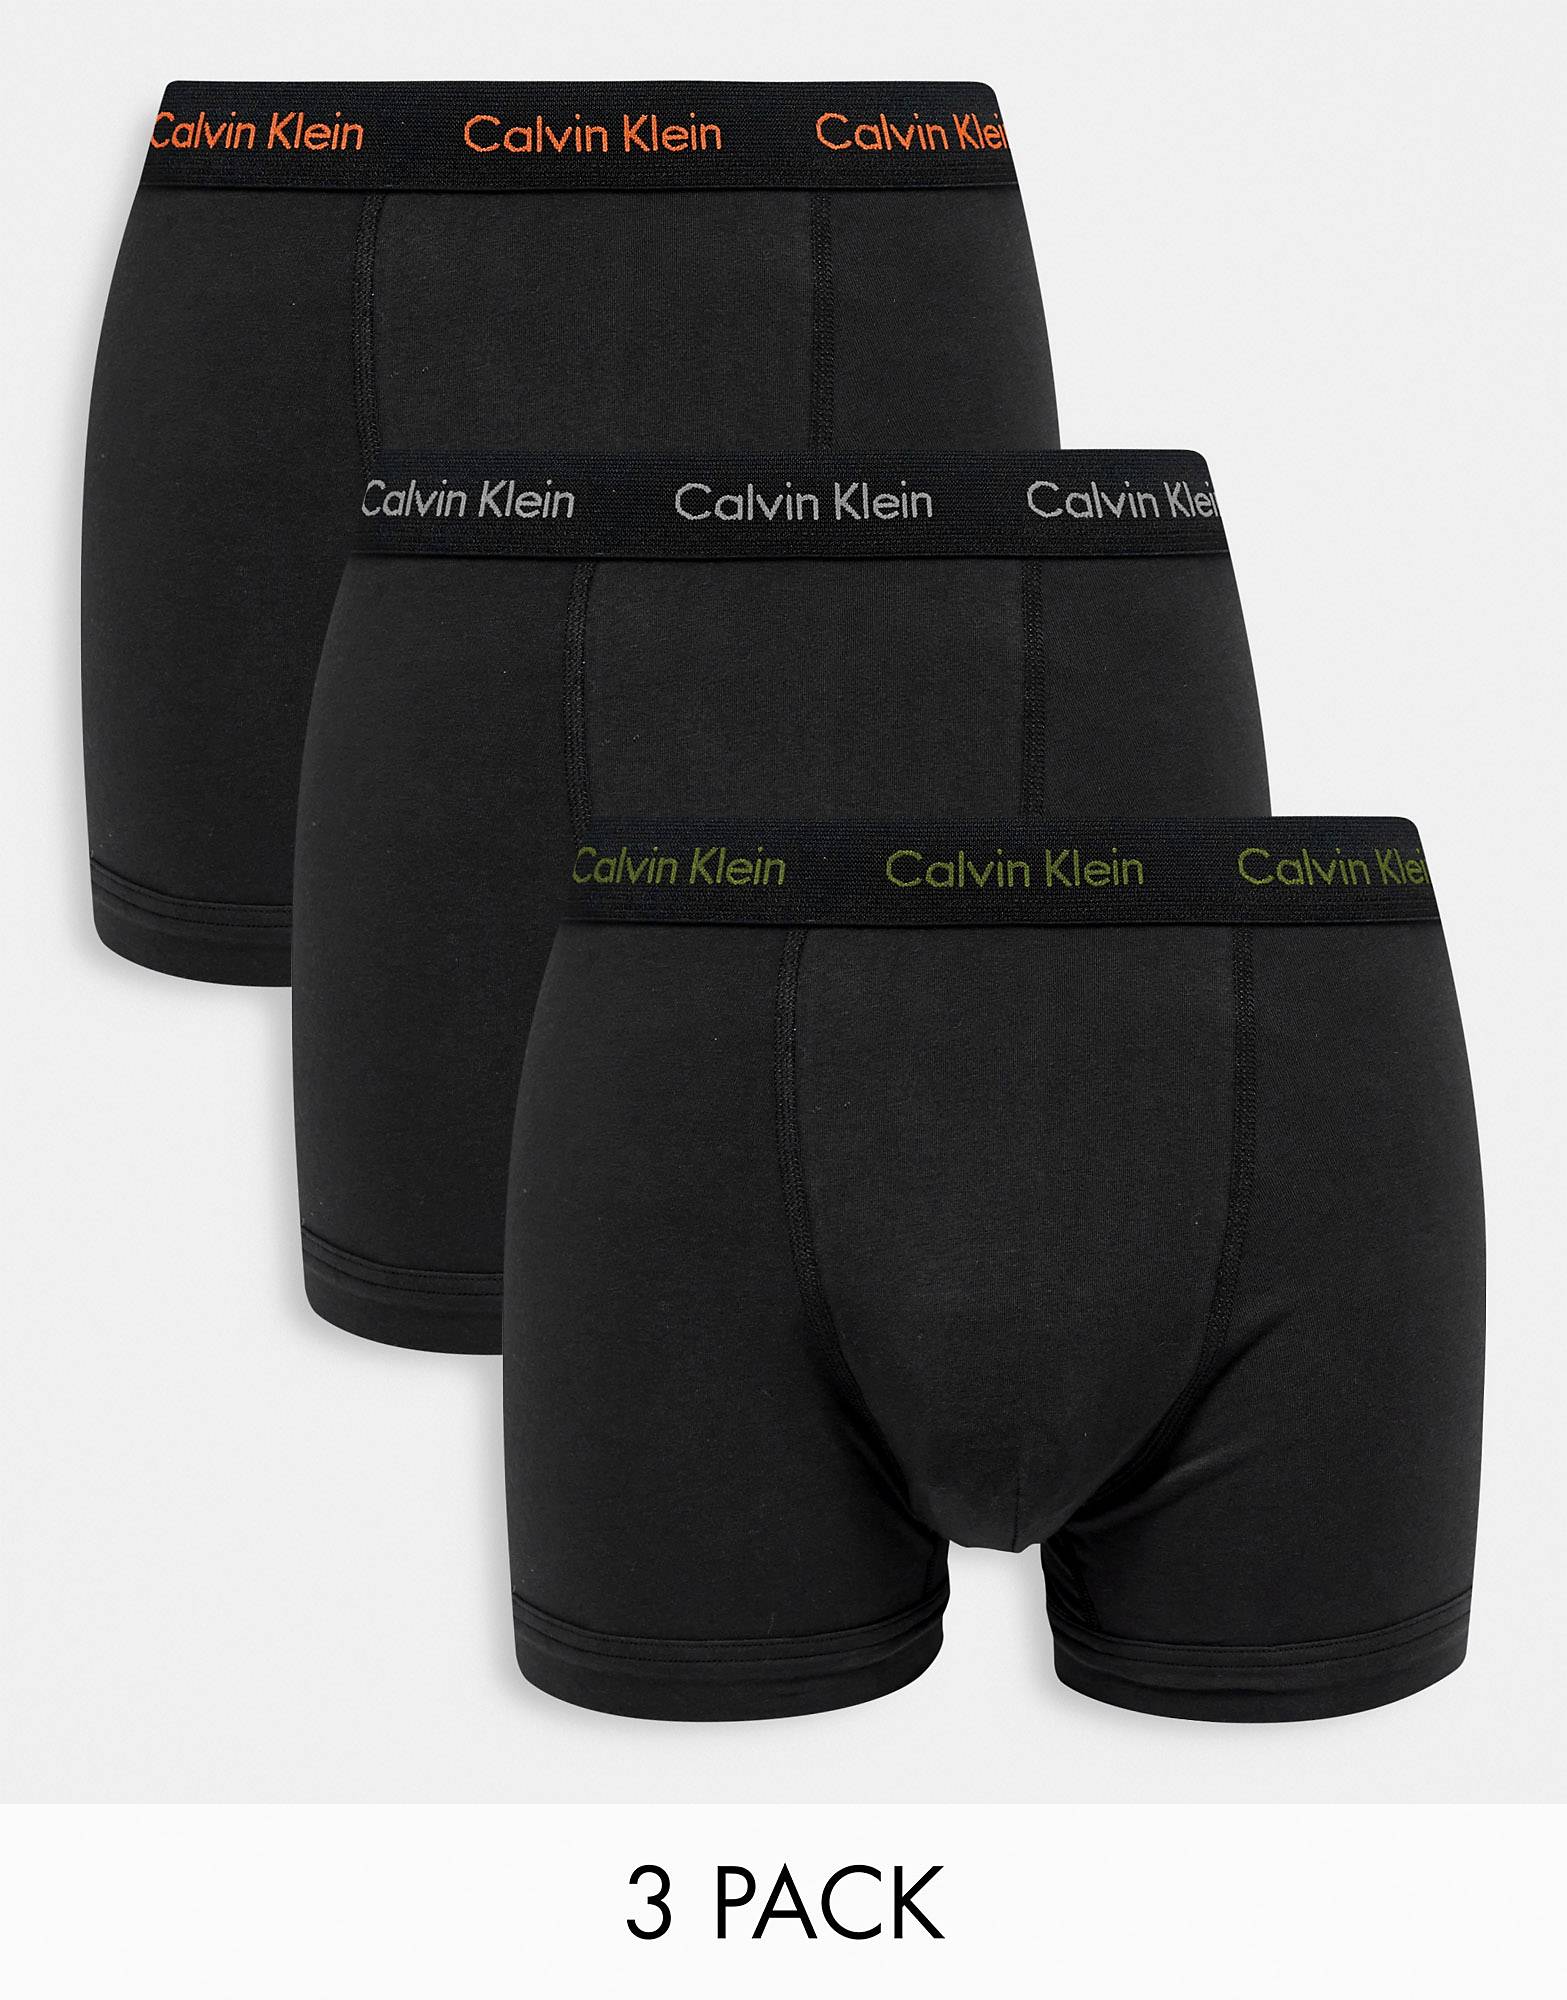 Комплект из 3 пар трусов Calvin Klein черного цвета с поясом с контрастным логотипом комплект из трех трусов nike everyday cotton stretch черного цвета с контрастным поясом